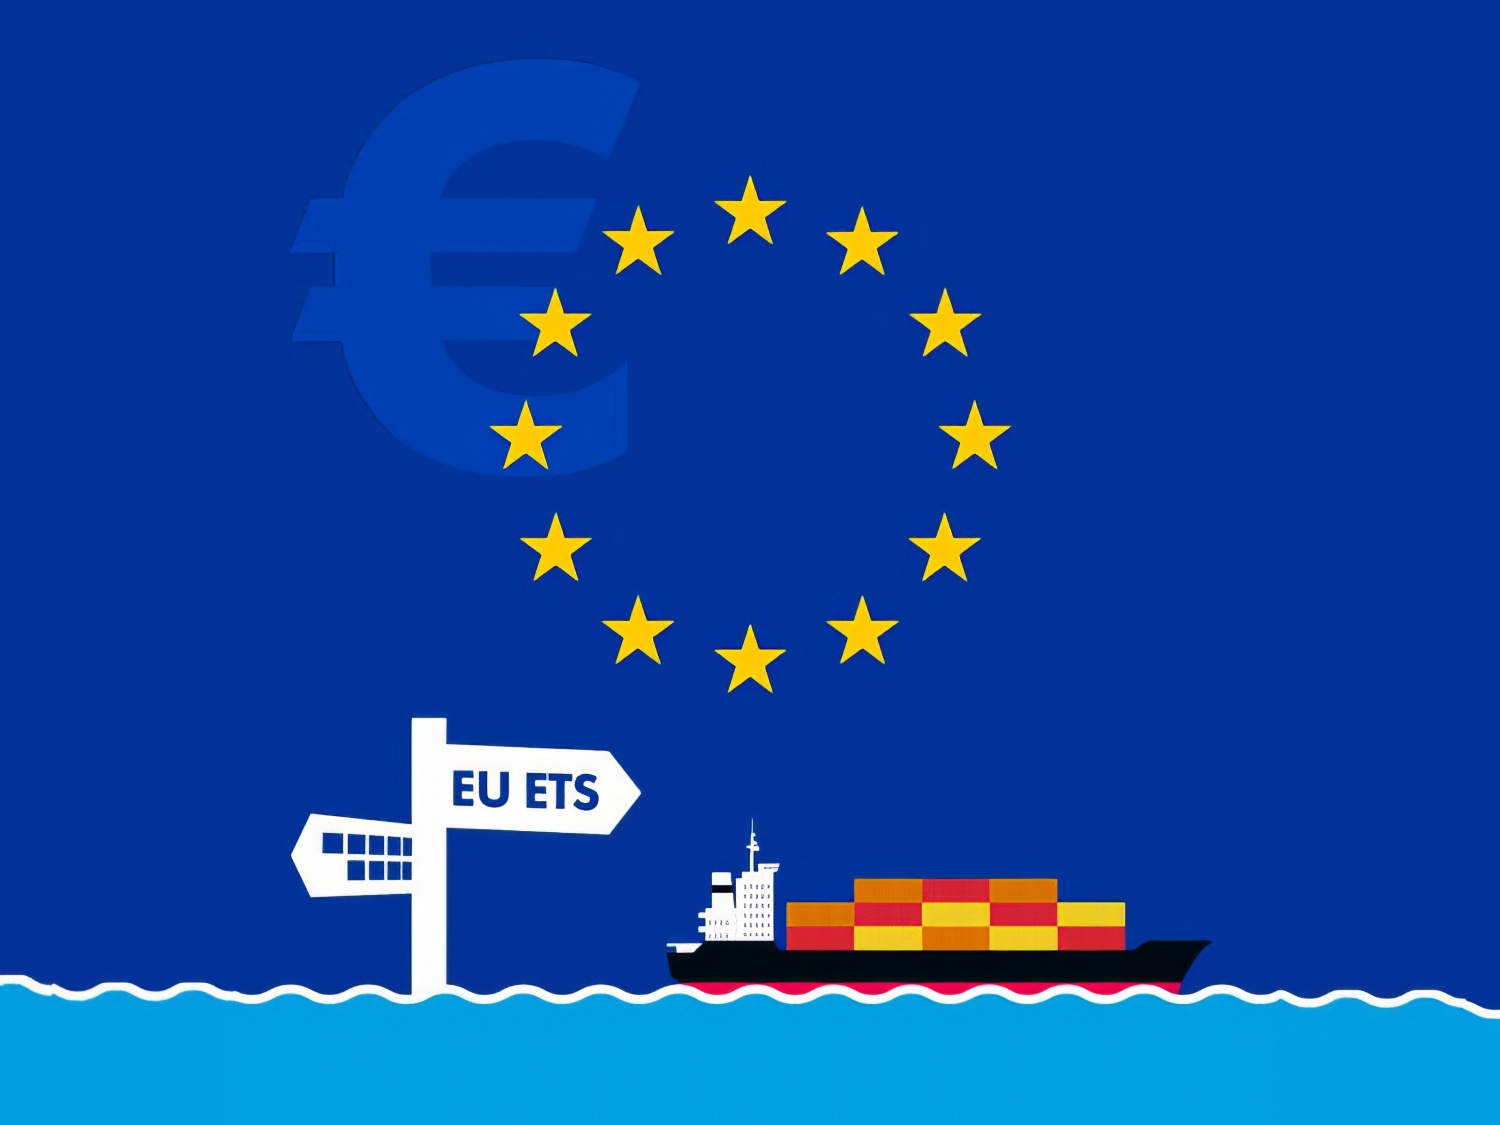 EU ETS: Hệ thống Giao dịch phát thải của Liên minh Châu Âu